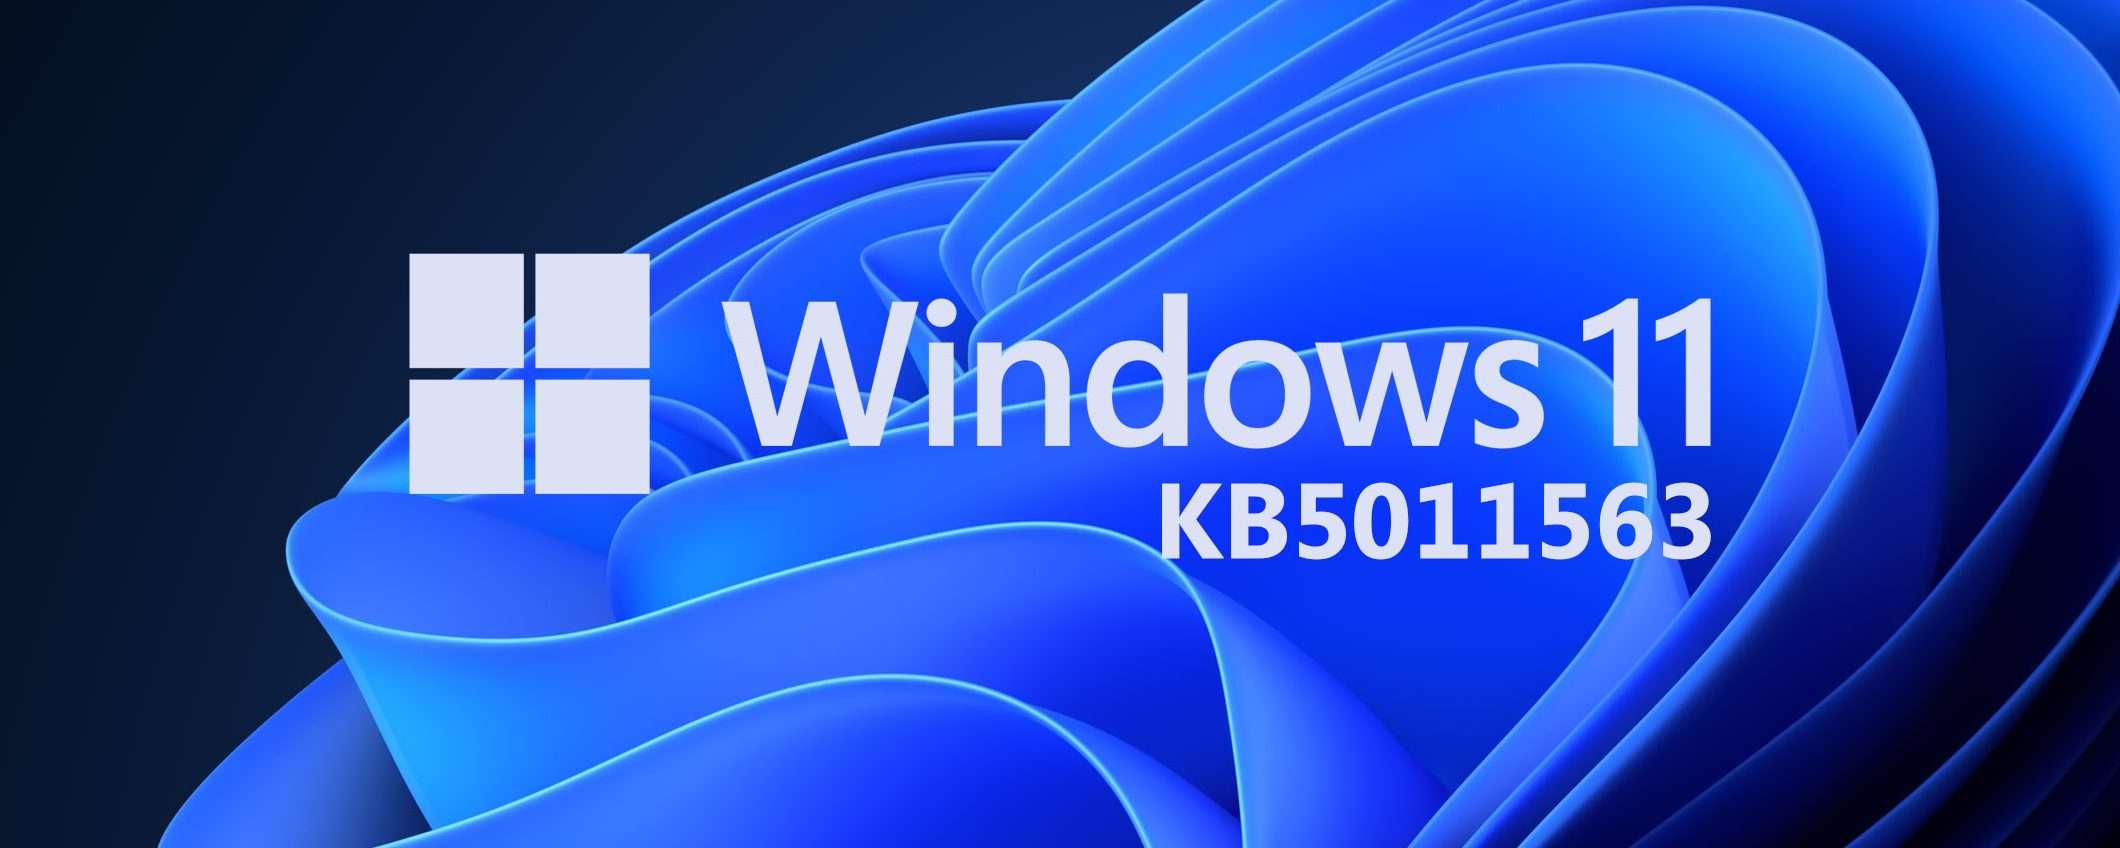 Windows 11: le novità dell'aggiornamento KB5011563